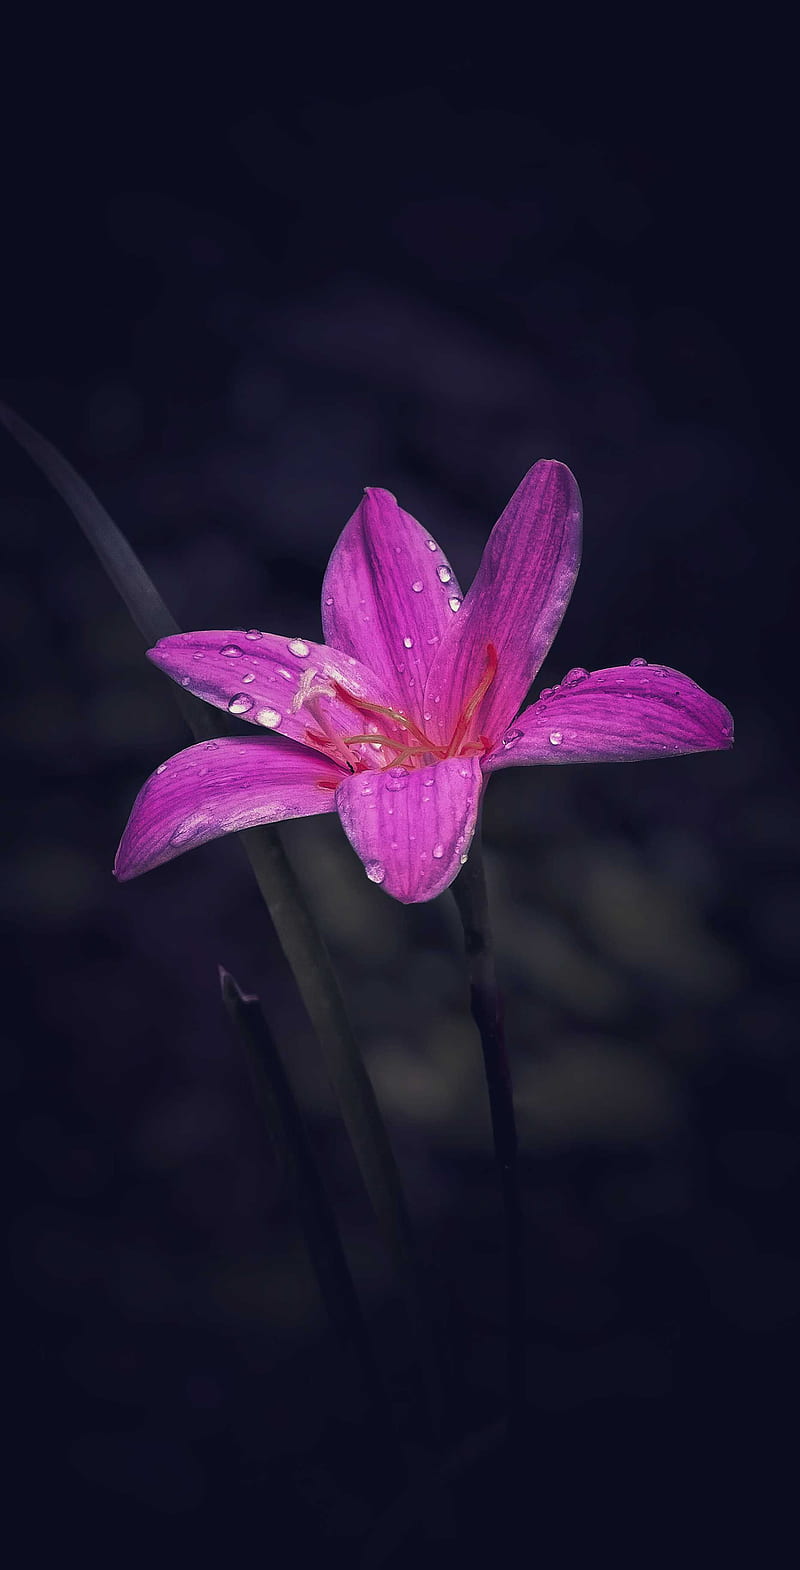 Dark flower background, #flower, #beautiful, #dark, #love, #mody ...